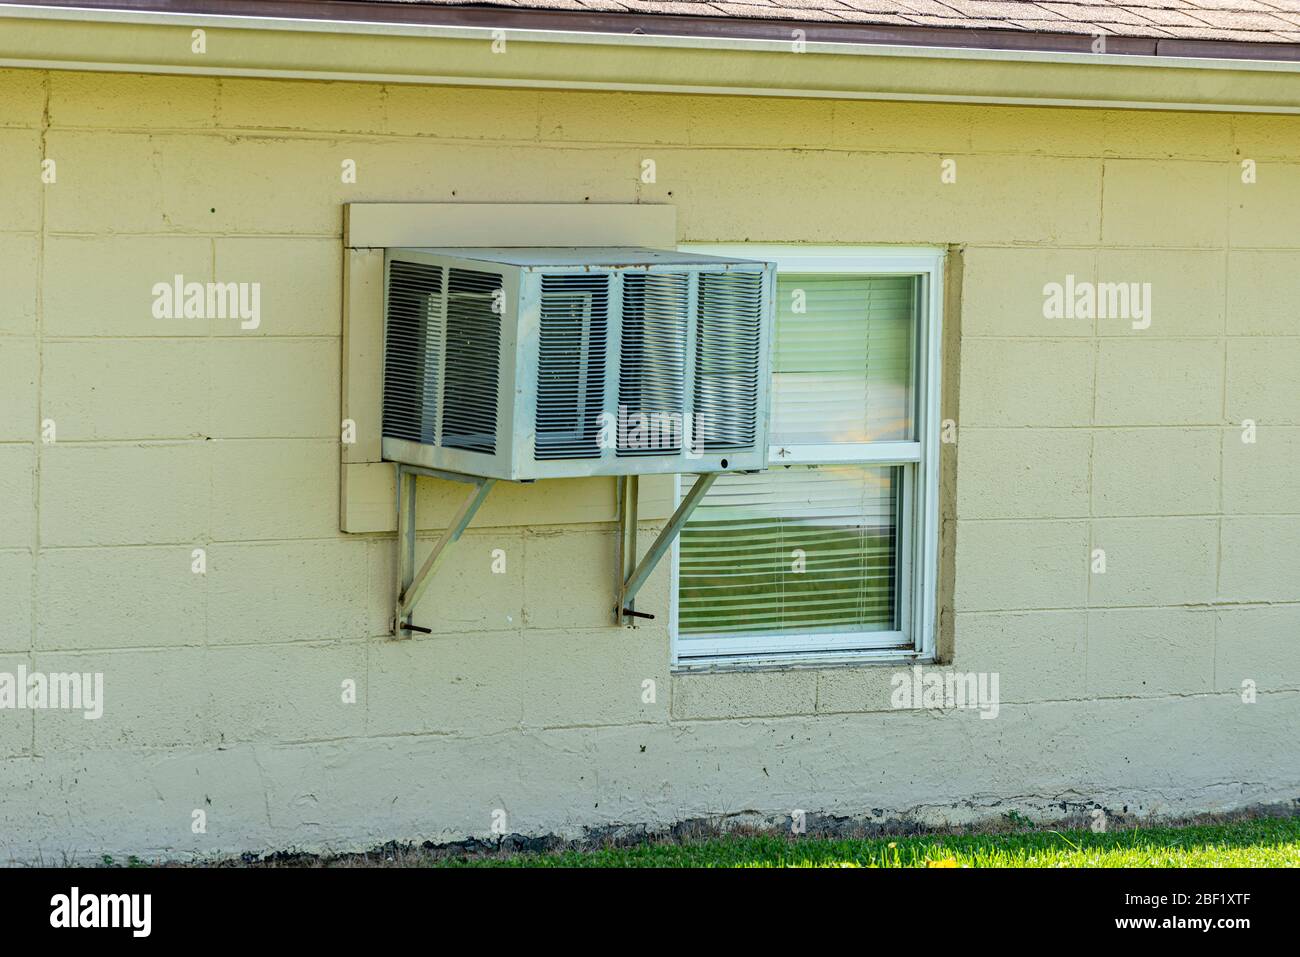 Diferencias entre aire acondicionado de ventana y de pared – Toolydo